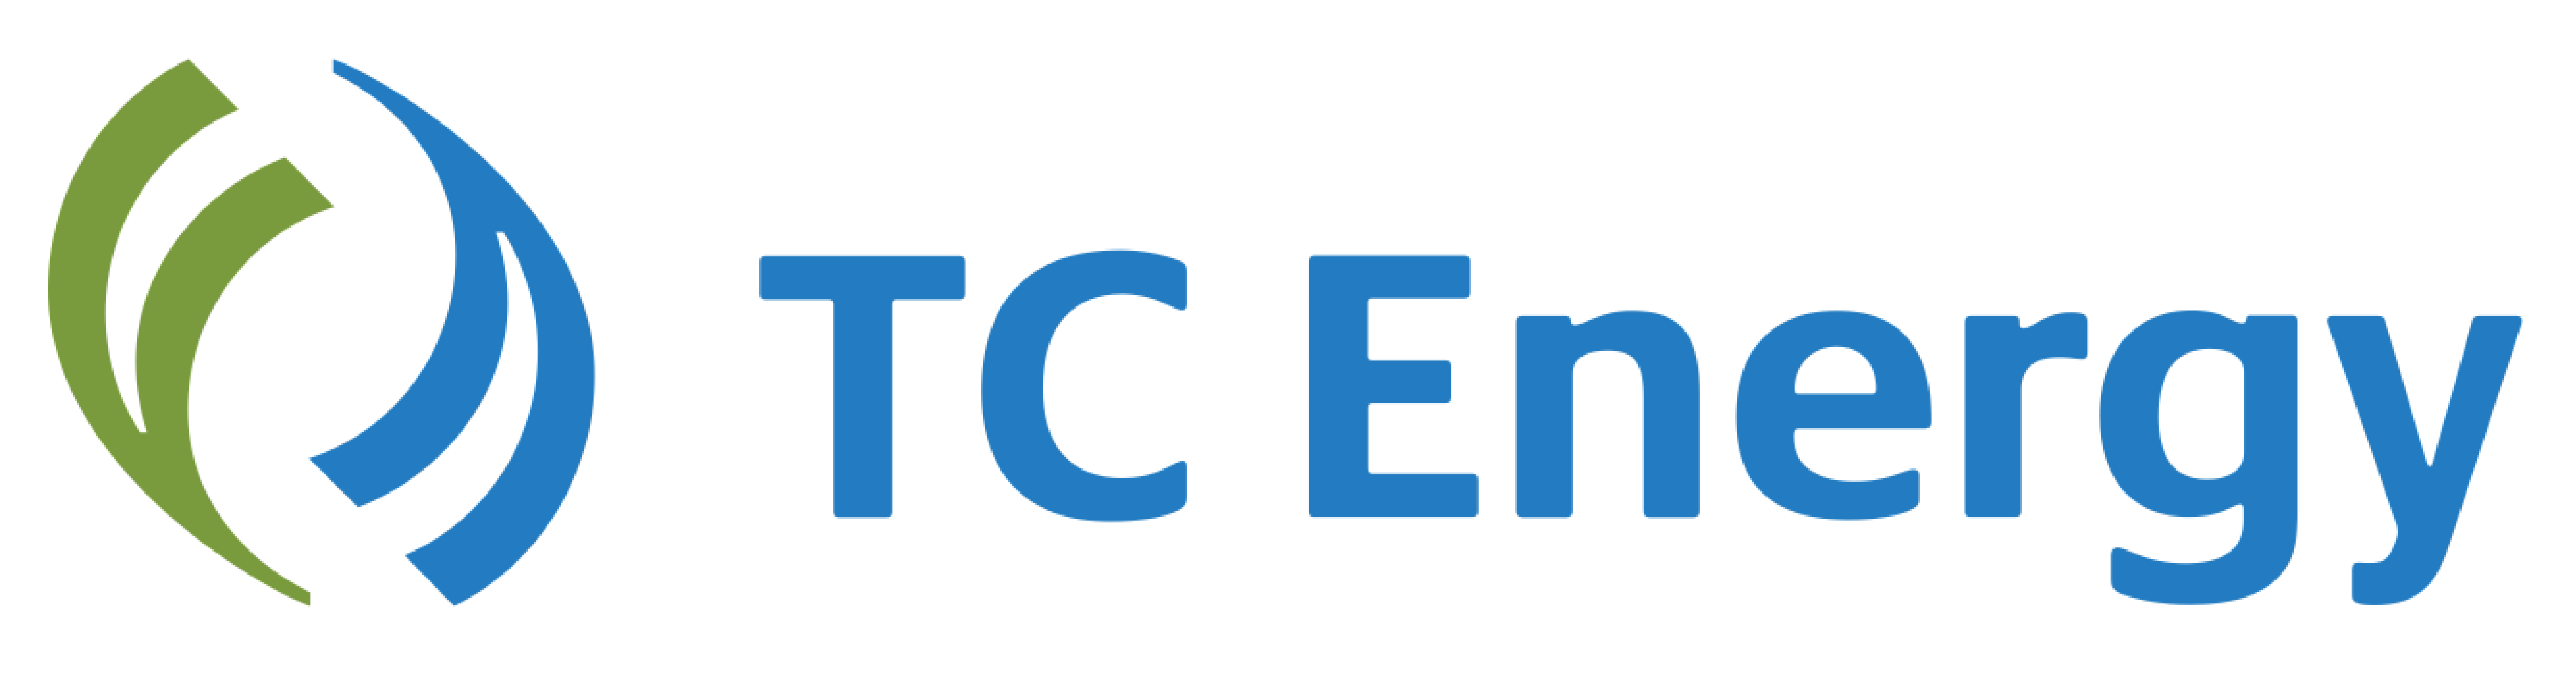 TC-Energy-logo-white-back-01